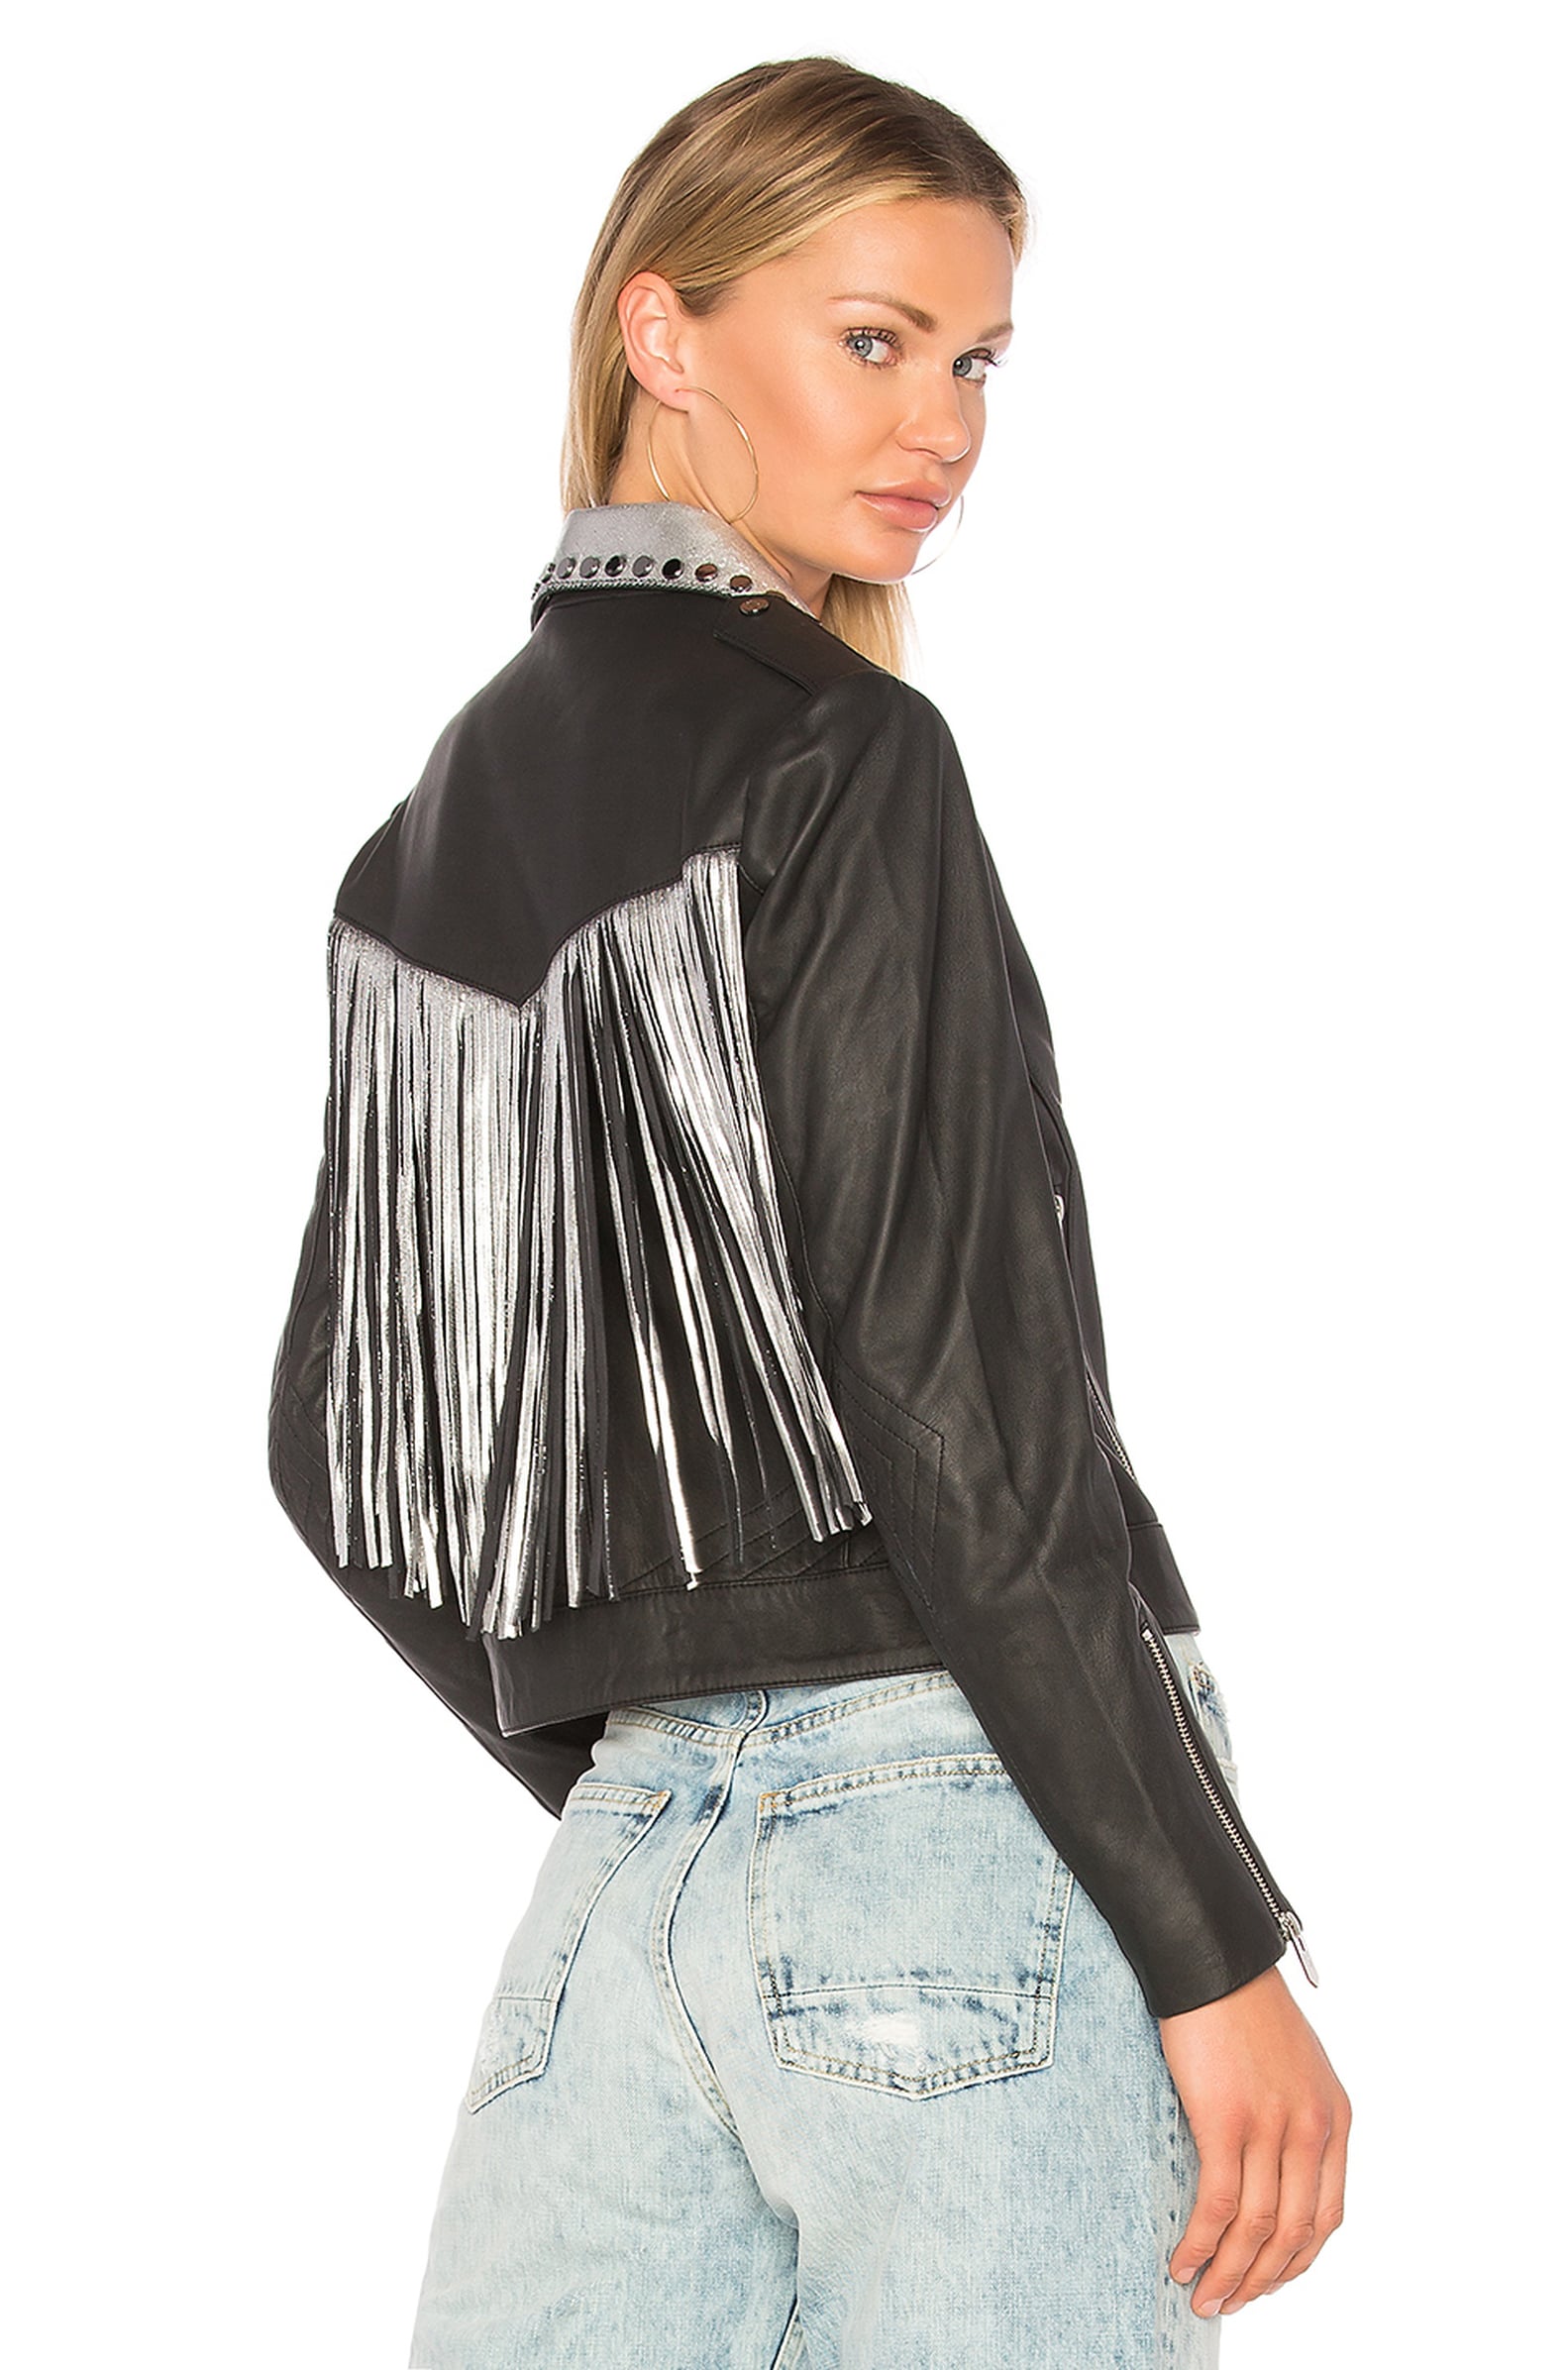 Leather Jacket Details | POPSUGAR Fashion